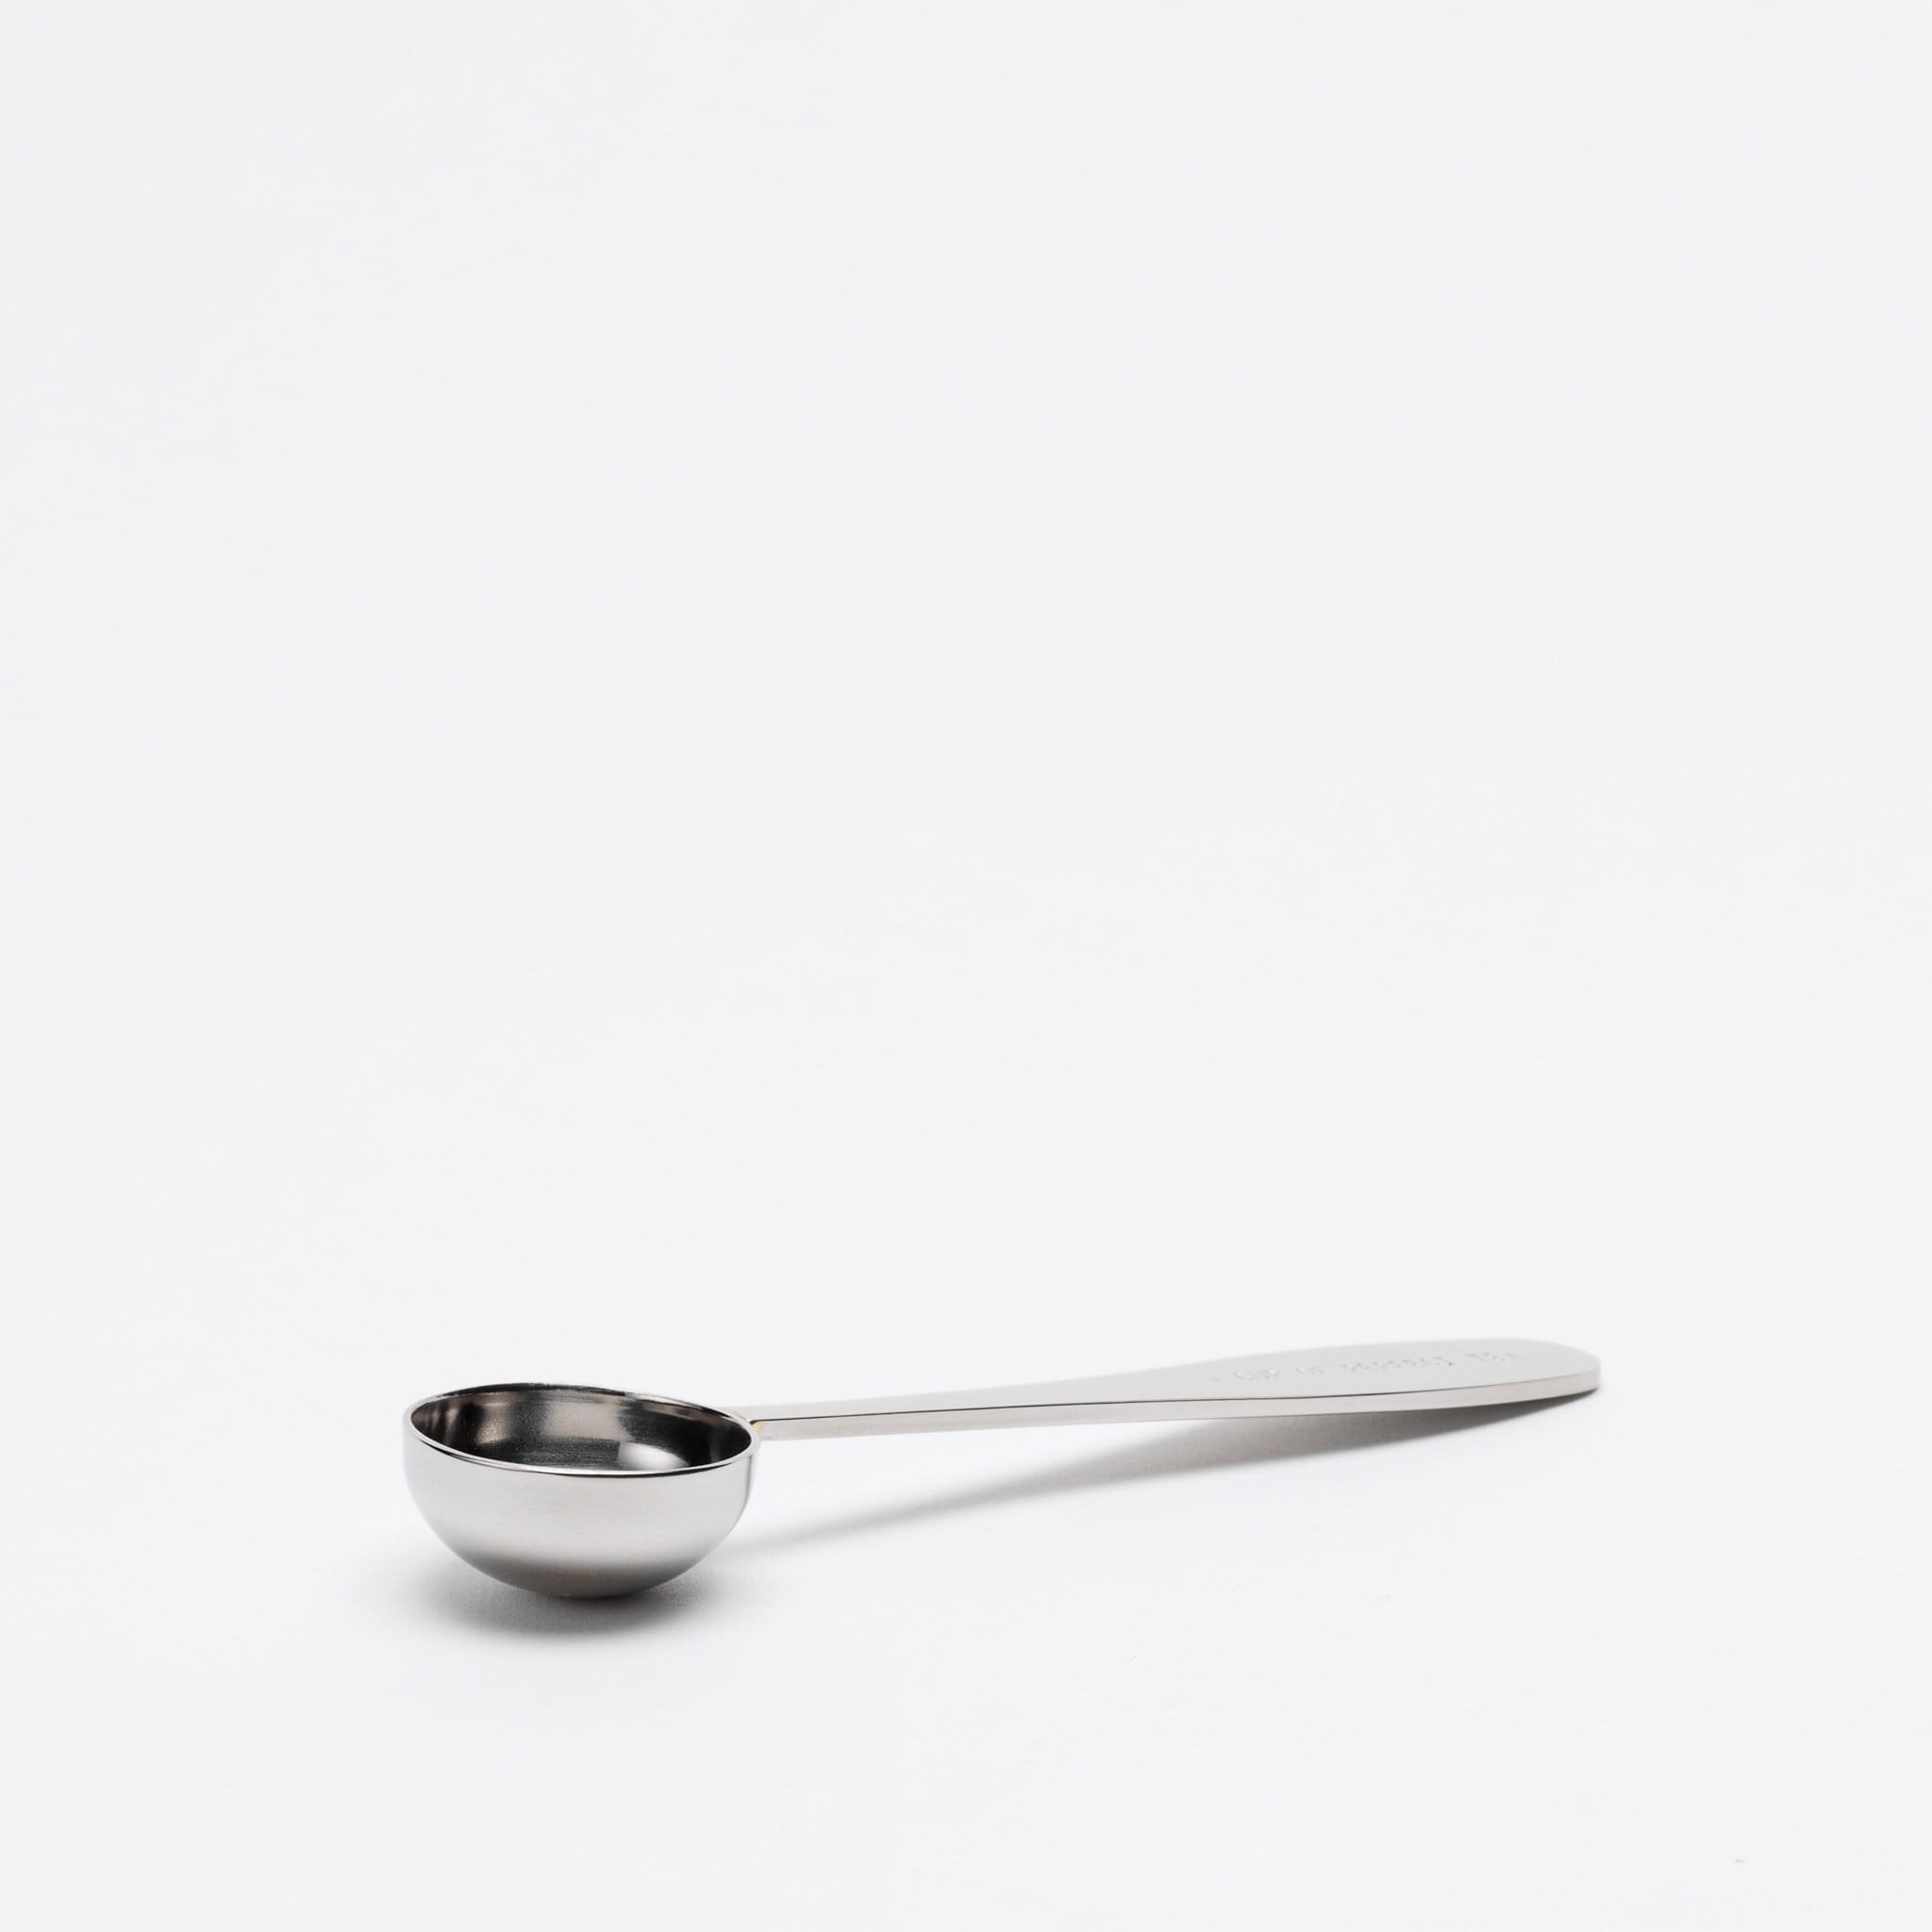 Loose Leaf Tea Spoon Measure | One Cup of Perfect Tea | Stainless Steel  Scoop (Black)